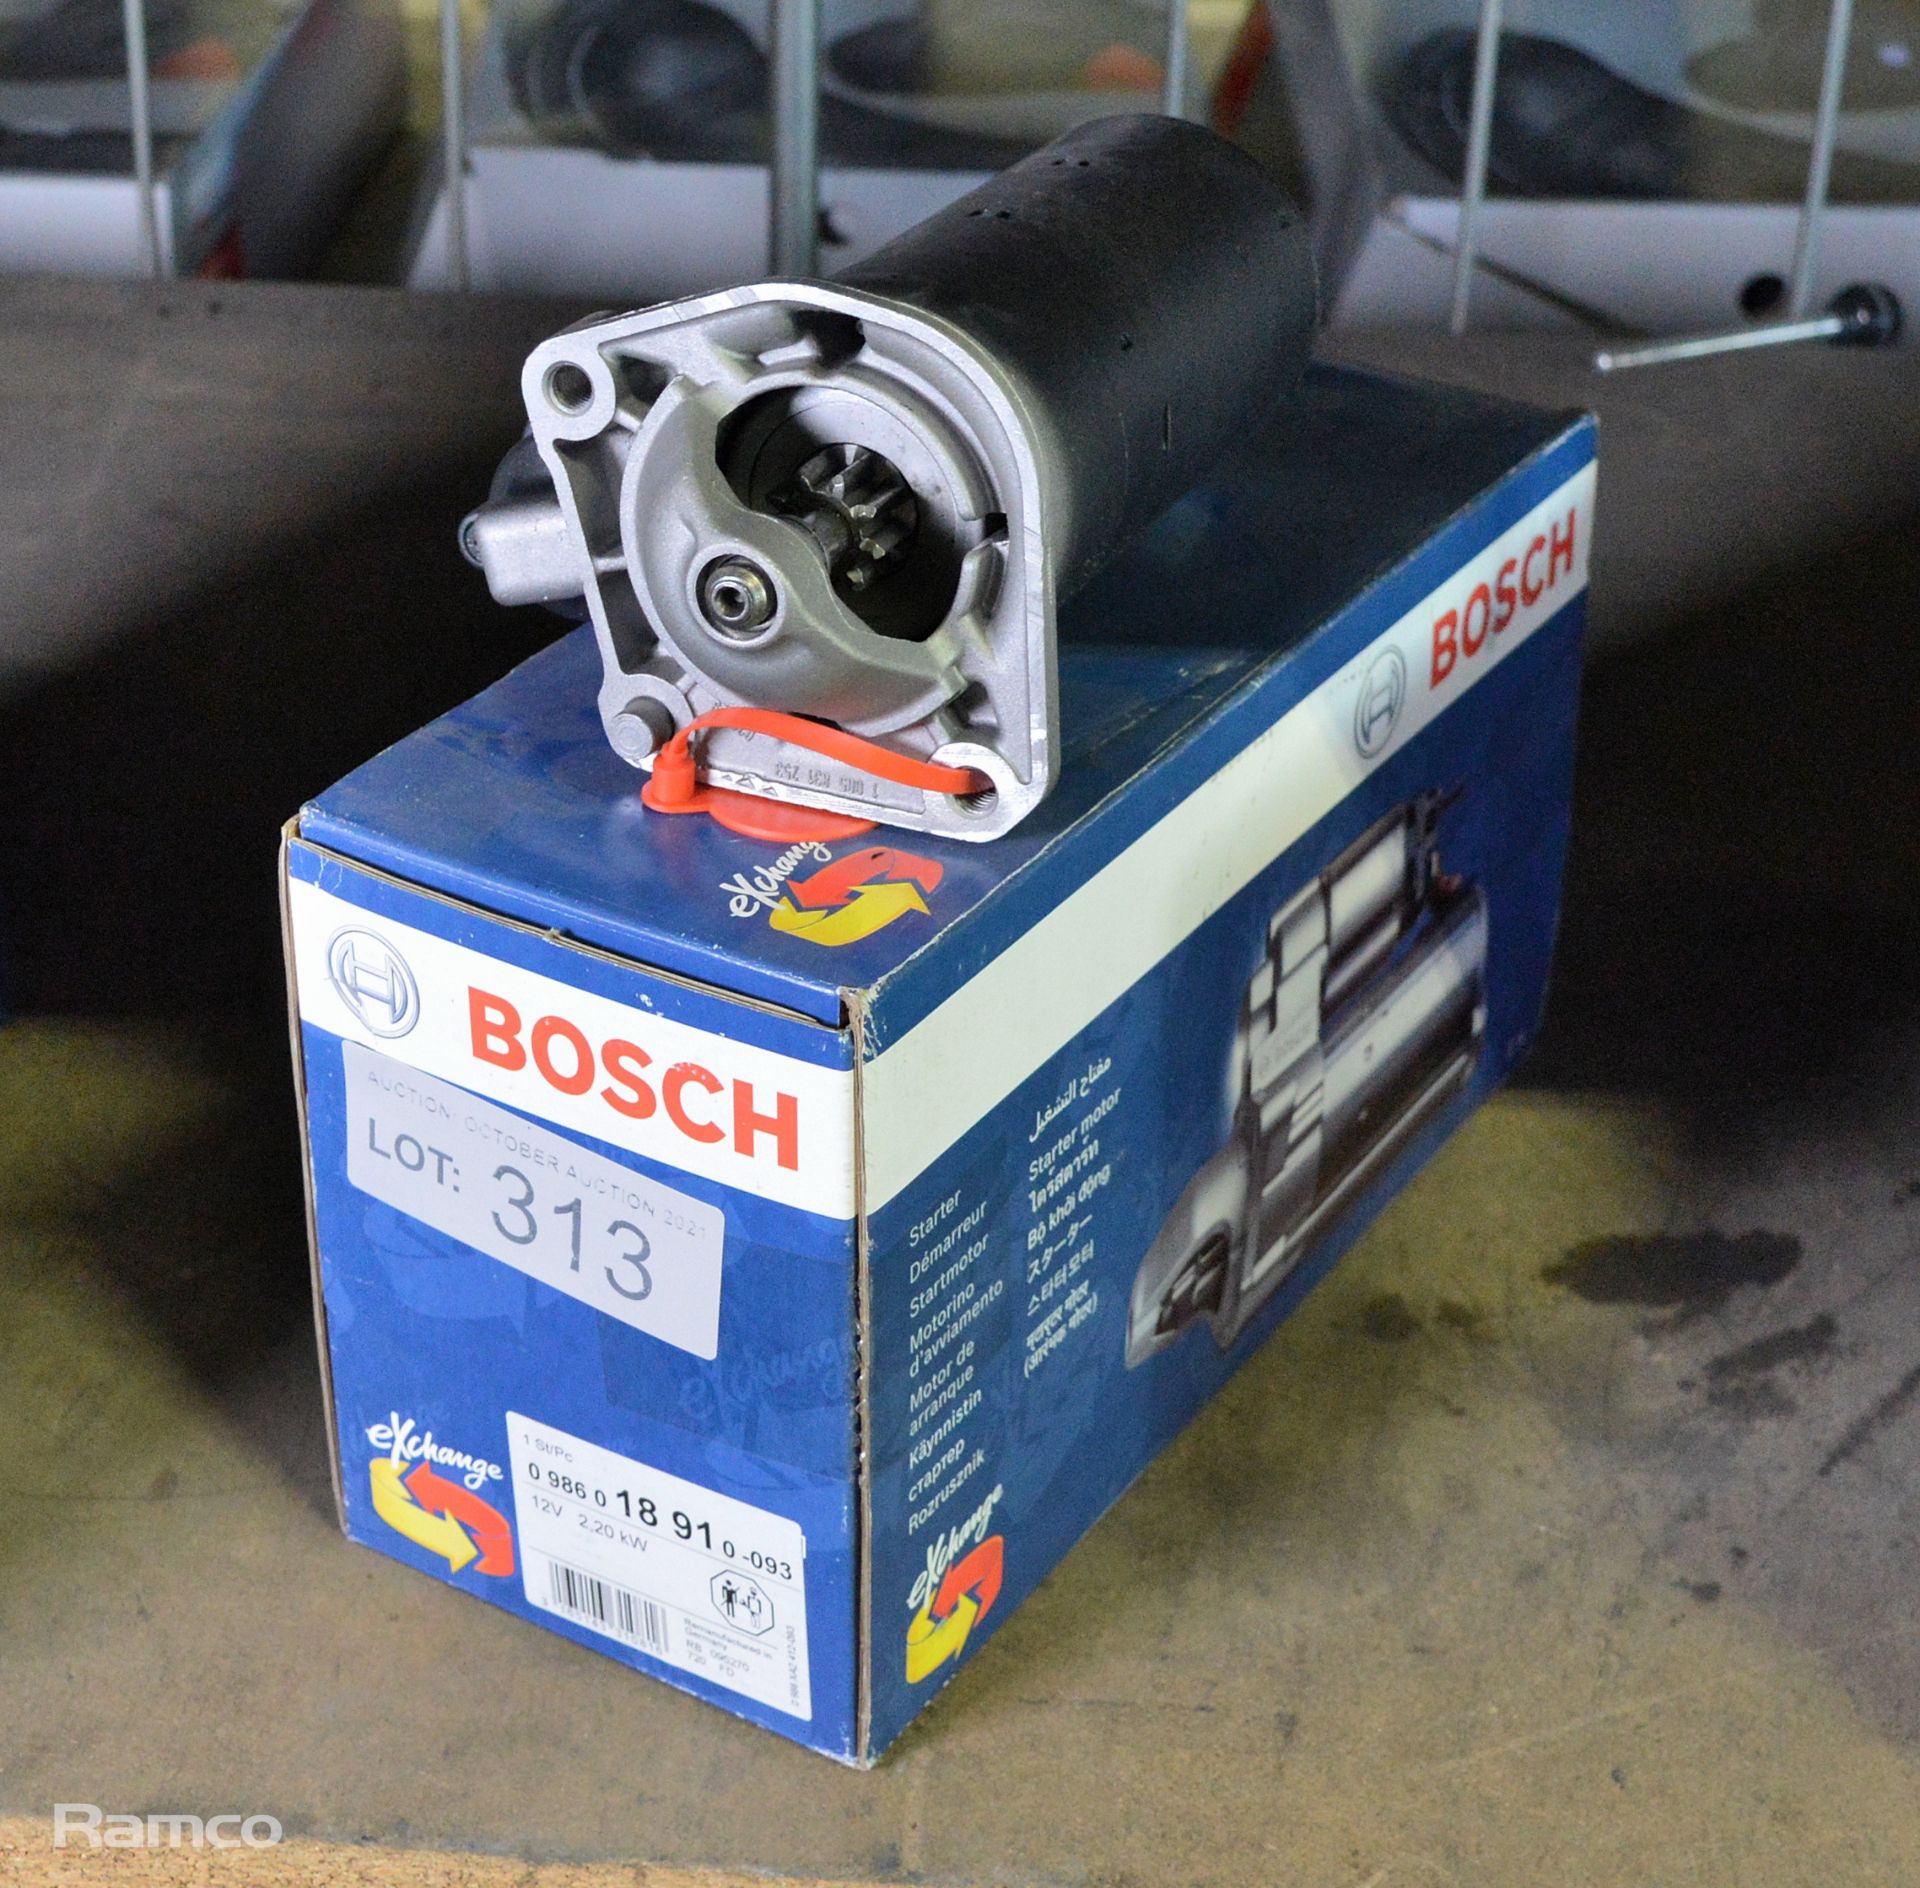 Bosch starter motor - 18 91 - 12V 2.20kW